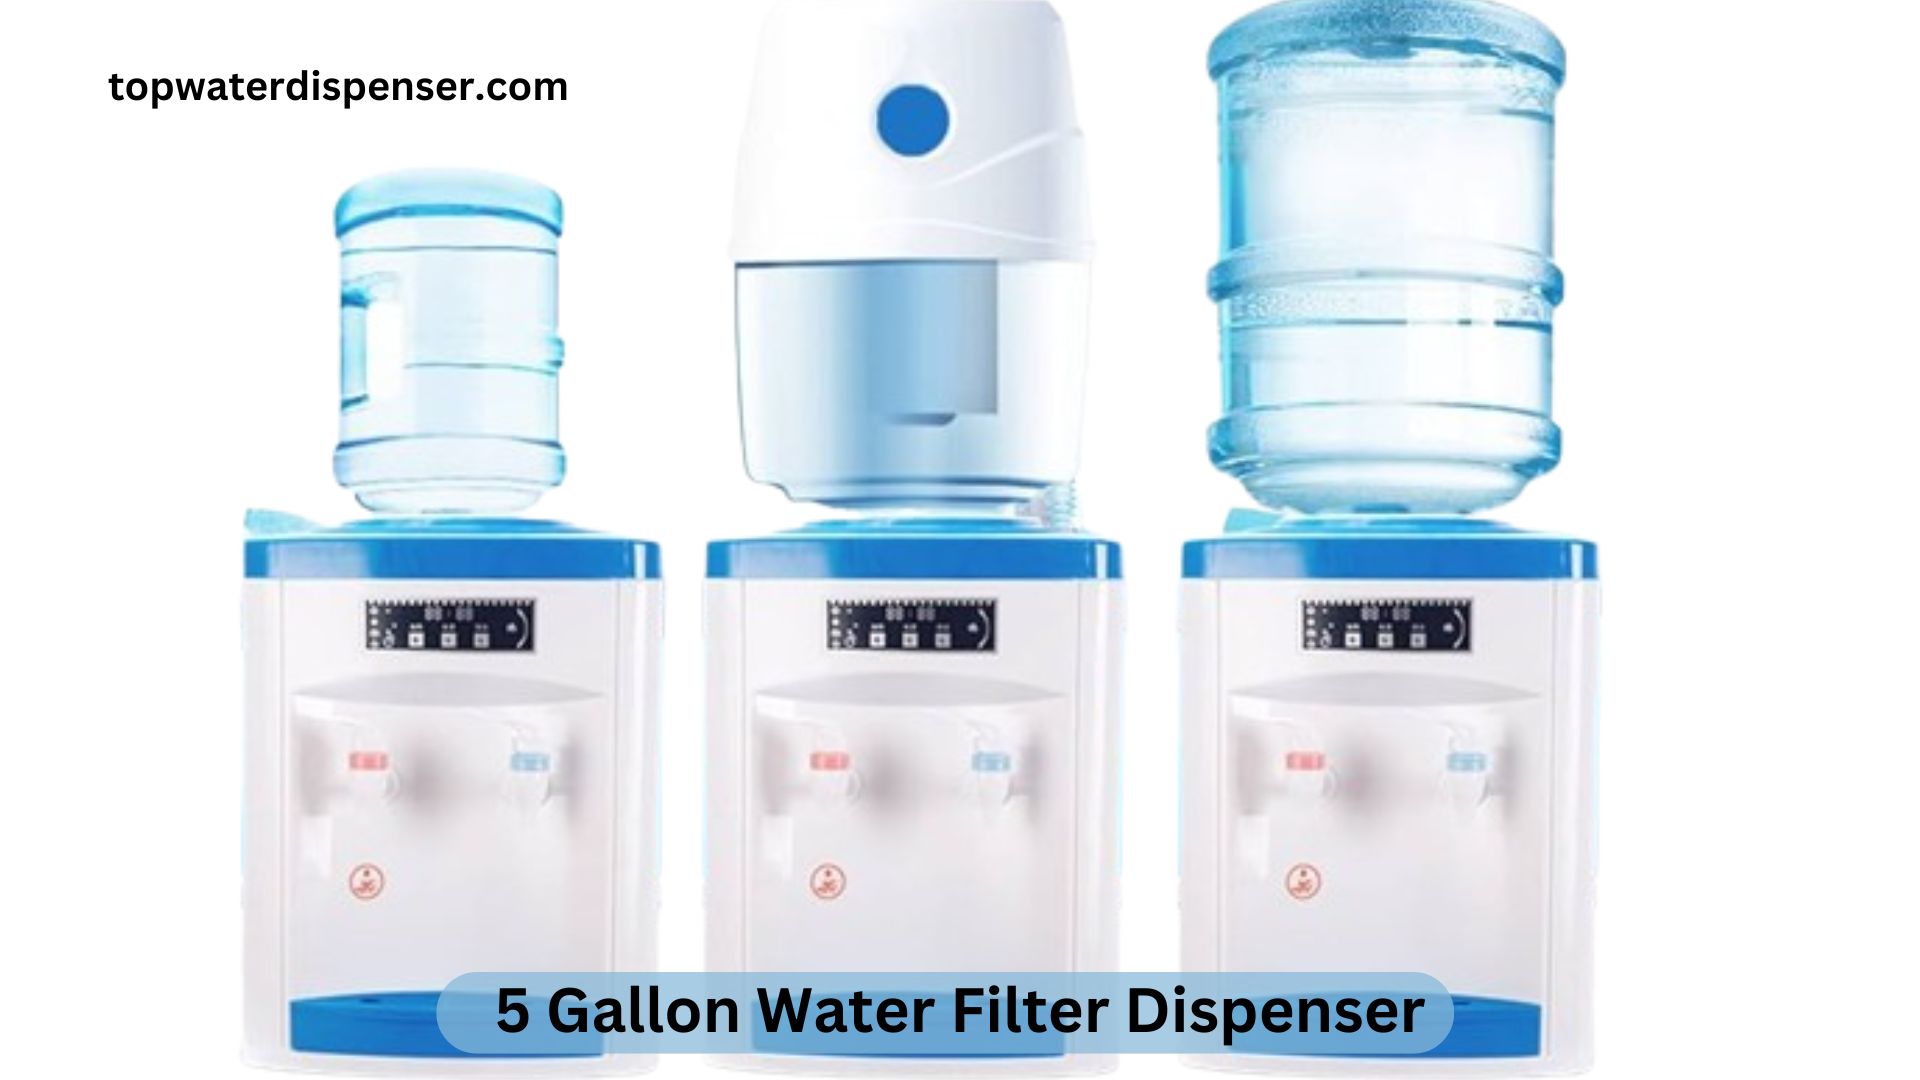 5 Gallon Water Filter Dispenser